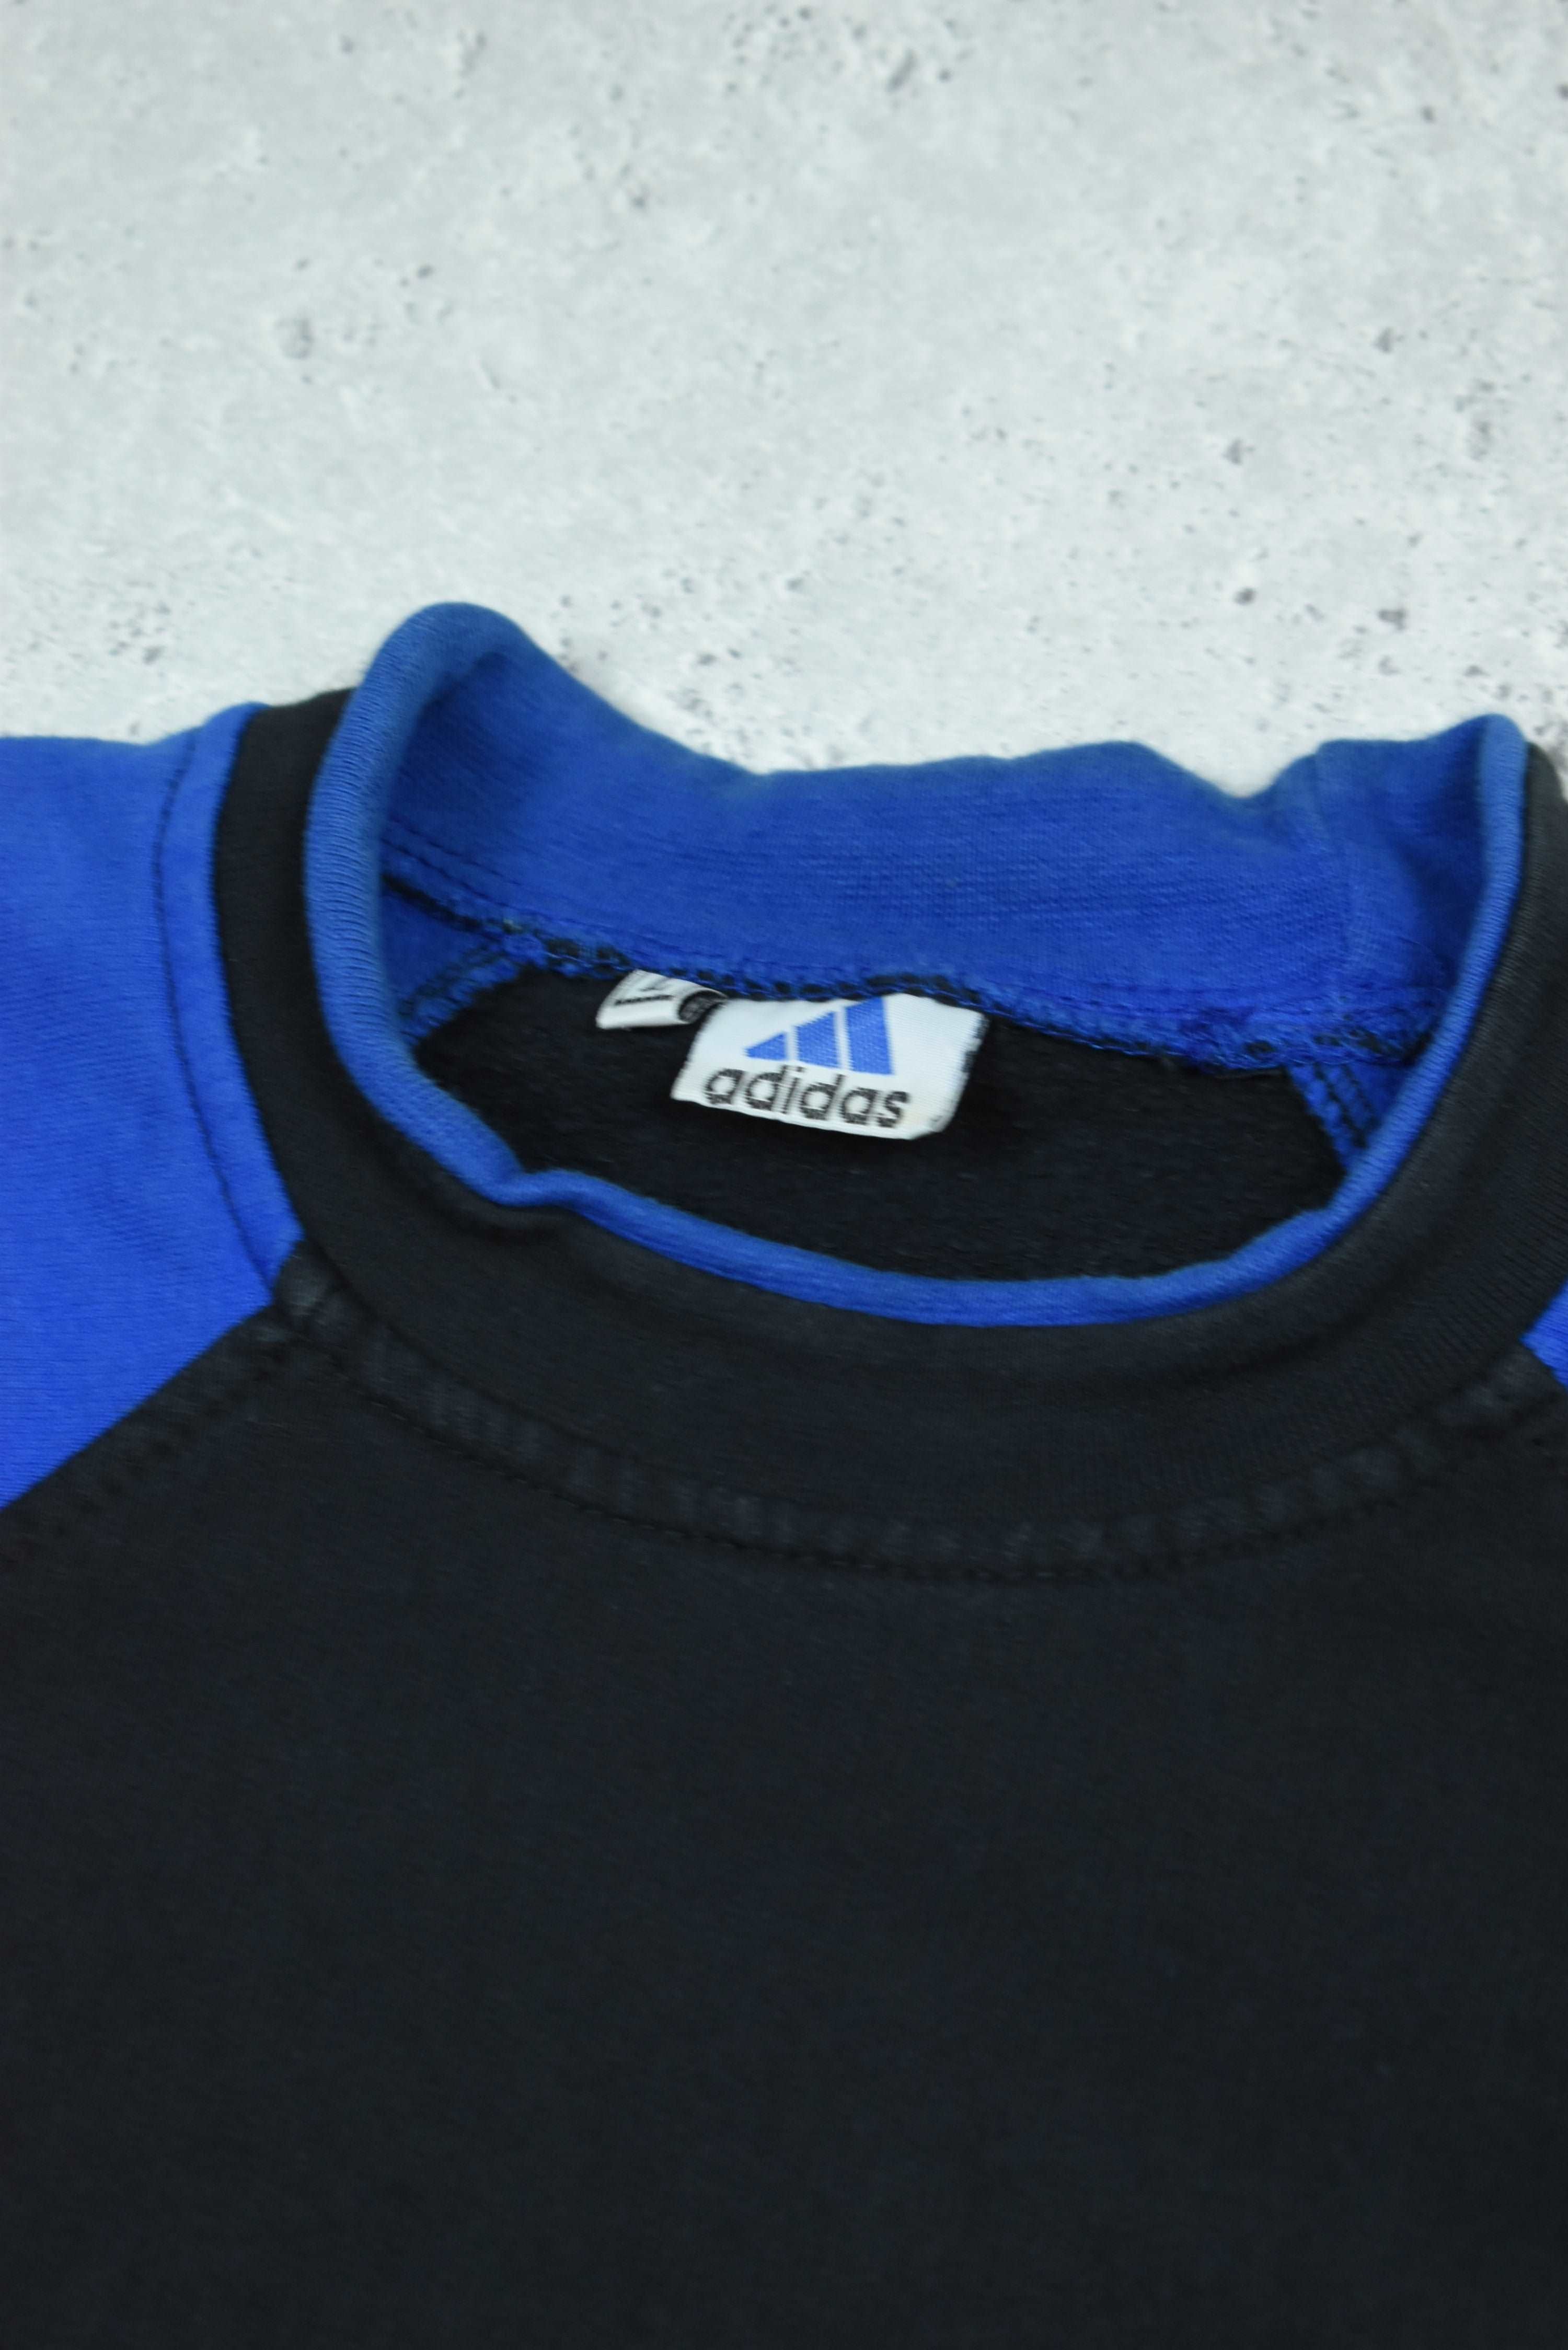 Vintage Adidas Embroidered Sweatshirt Medium